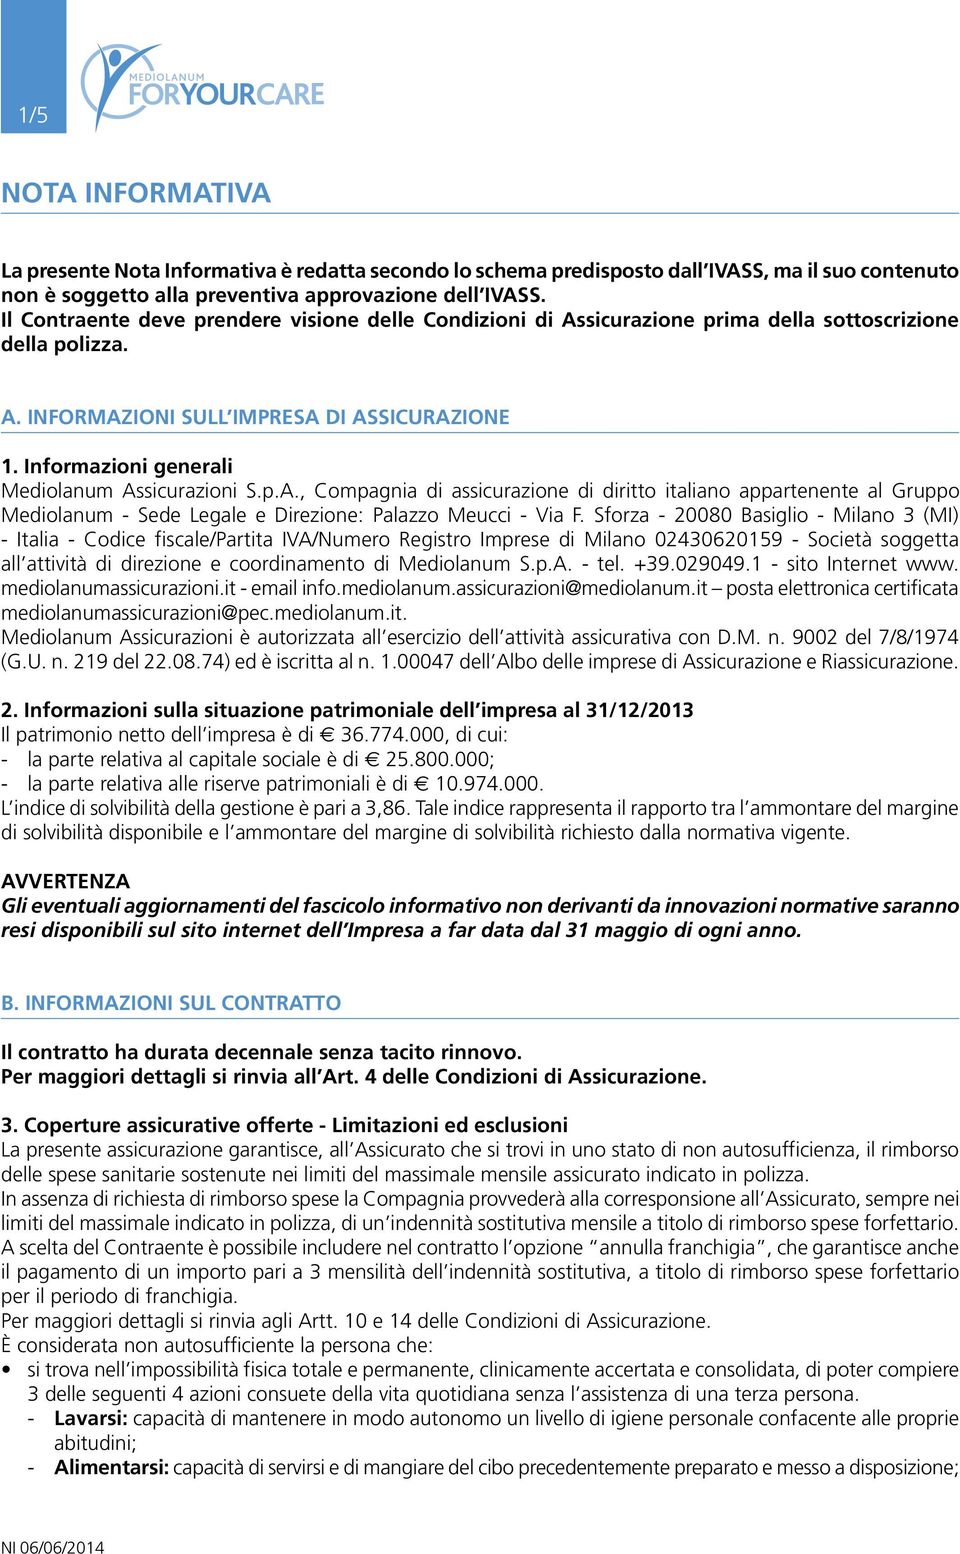 Informazioni generali Mediolanum Assicurazioni S.p.A., Compagnia di assicurazione di diritto italiano appartenente al Gruppo Mediolanum - Sede Legale e Direzione: Palazzo Meucci - Via F.